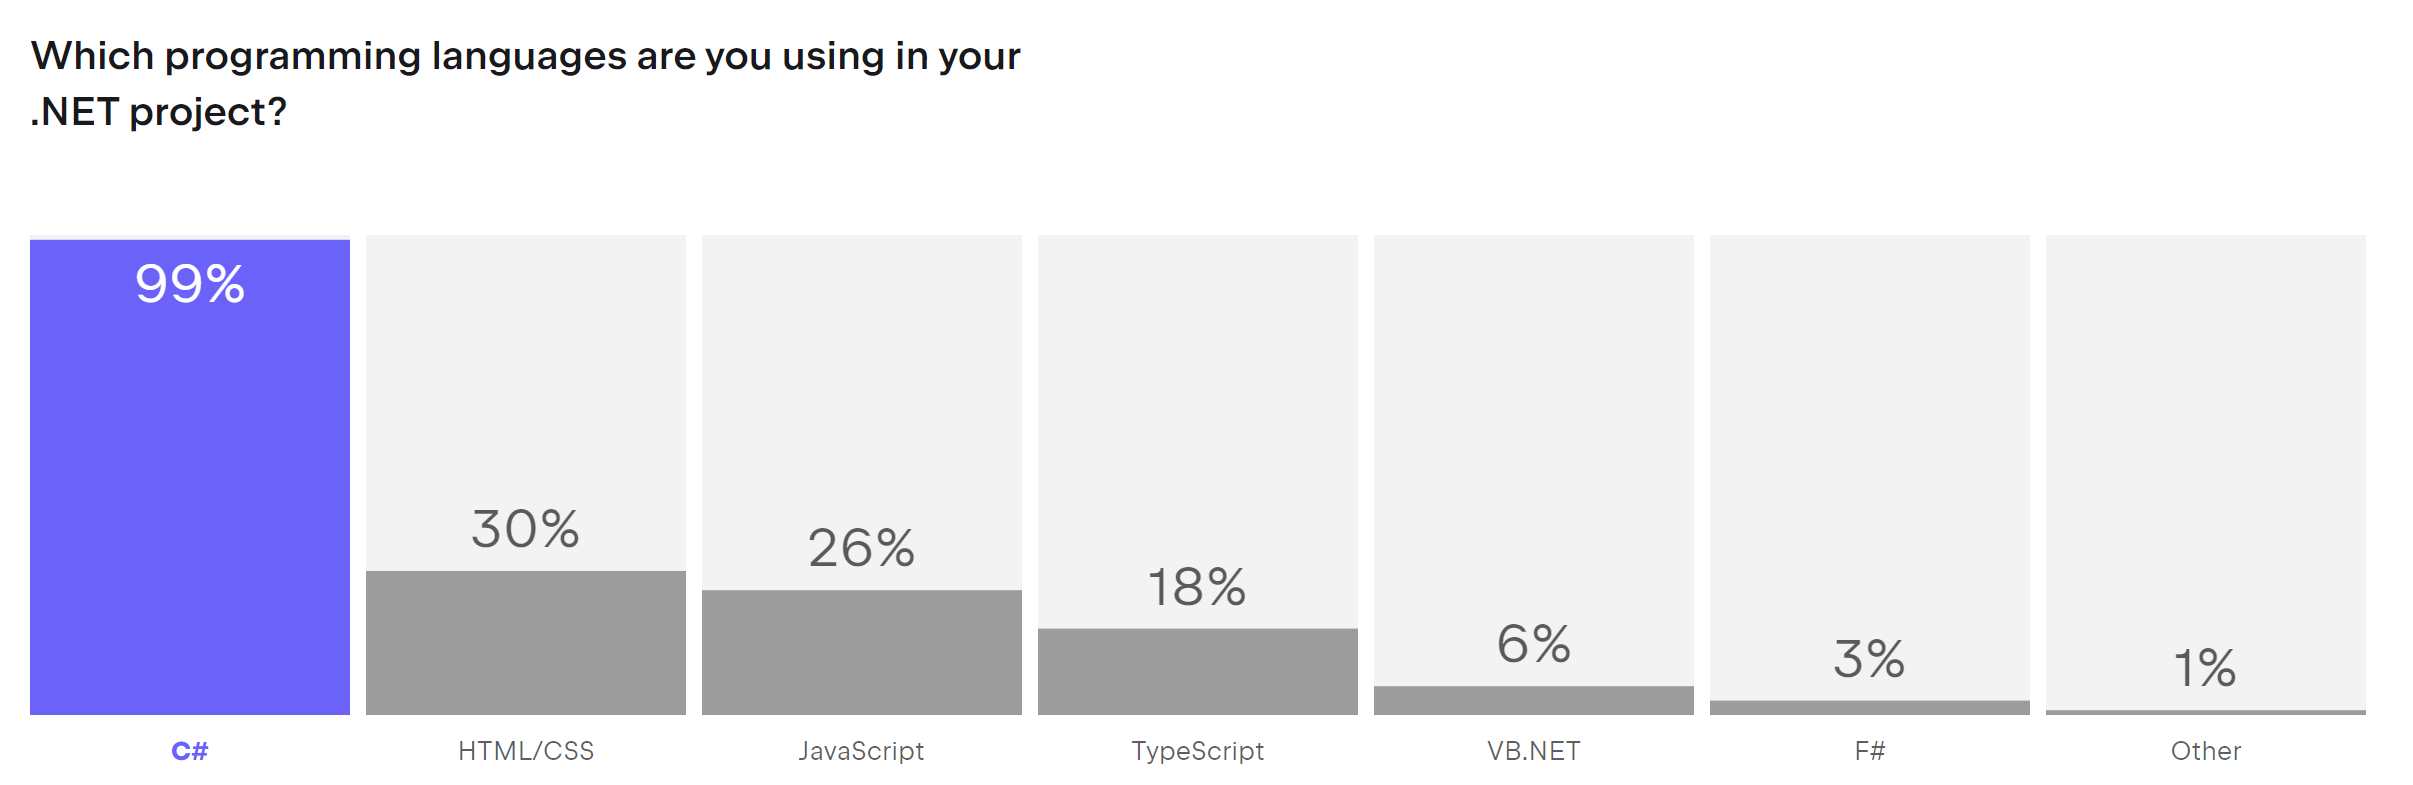 图片显示以下问题的调查结果：您正在 .NET 项目中使用哪种（哪些）编程语言？
